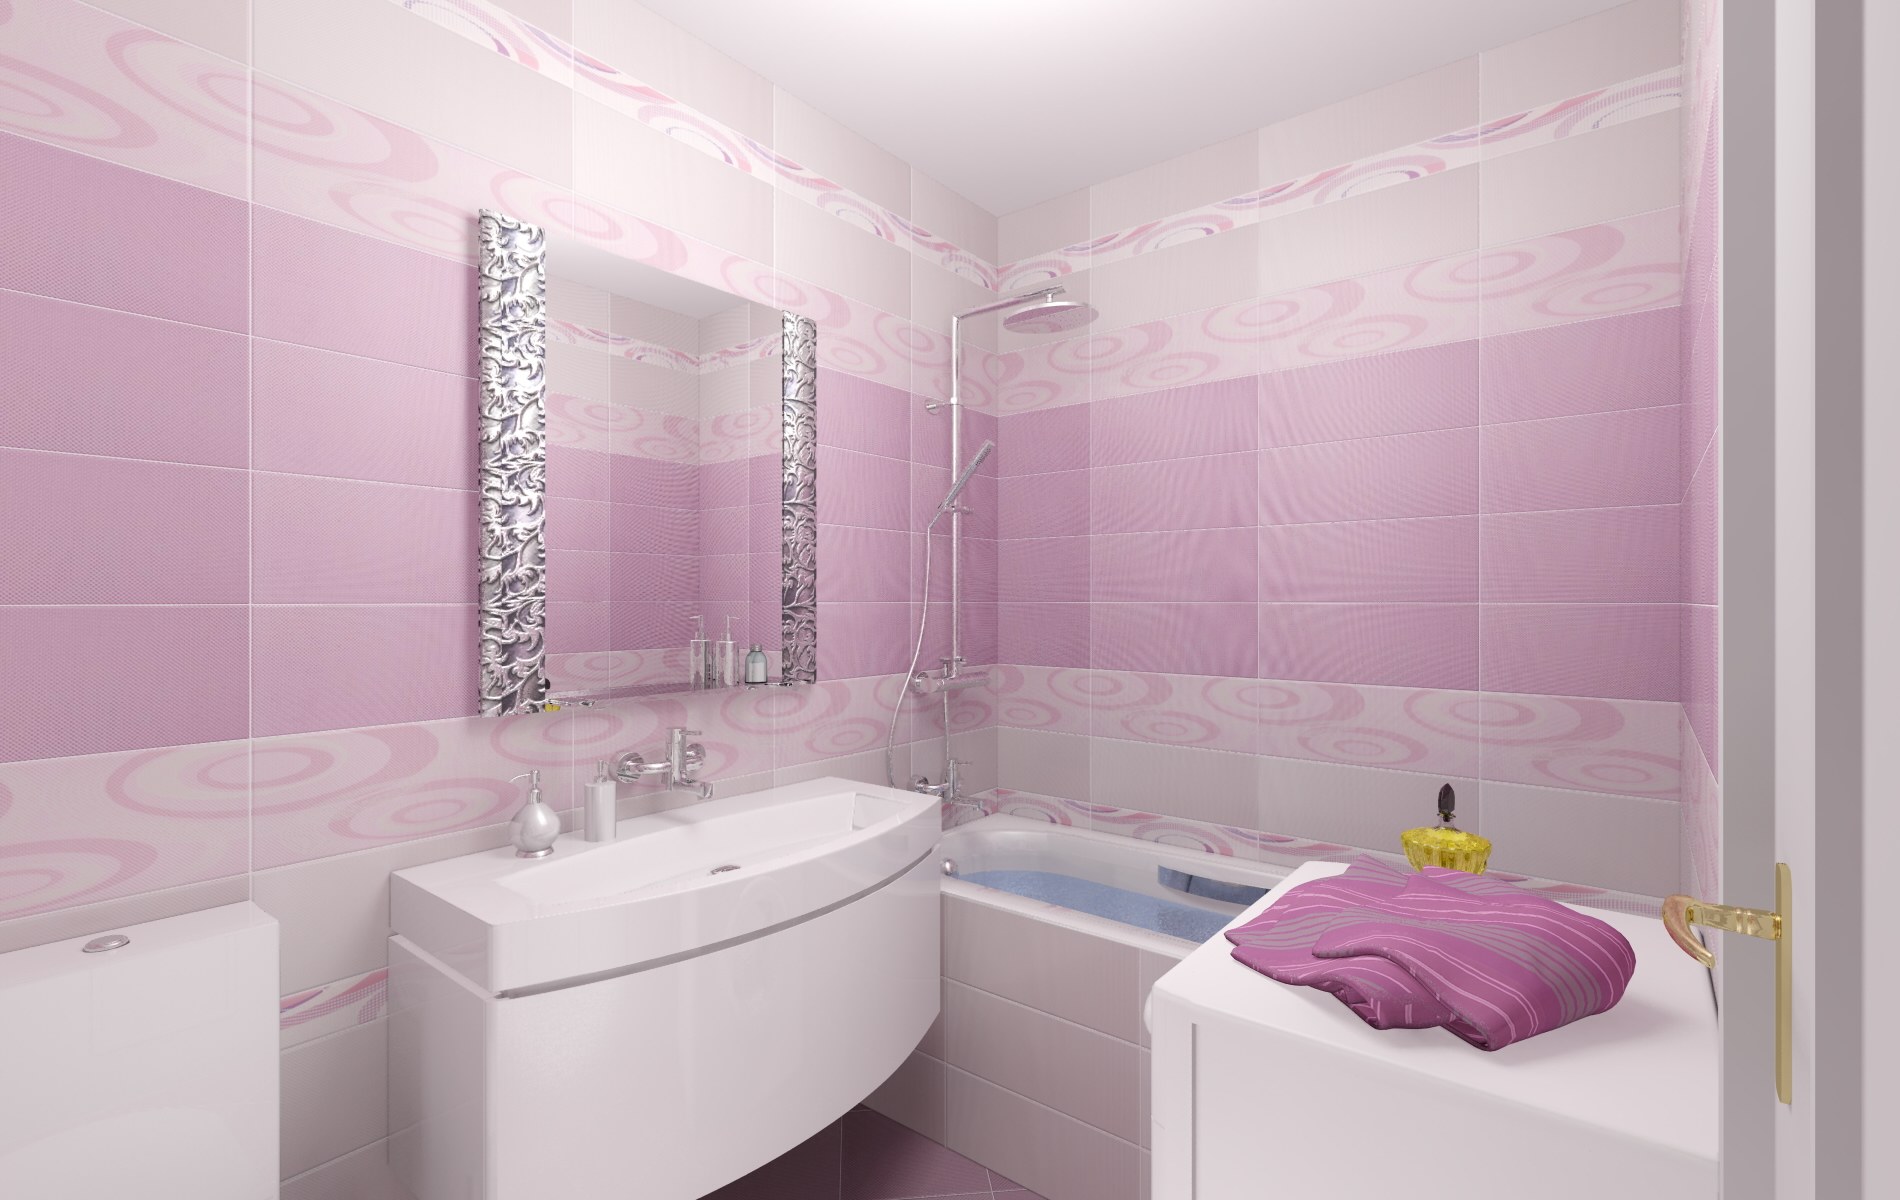 Отделка пвх плиткой. Панели для ванной комнаты. Плитка для ванной комнаты. Панели для ванной розовые. Ванная отделанная пластиком.